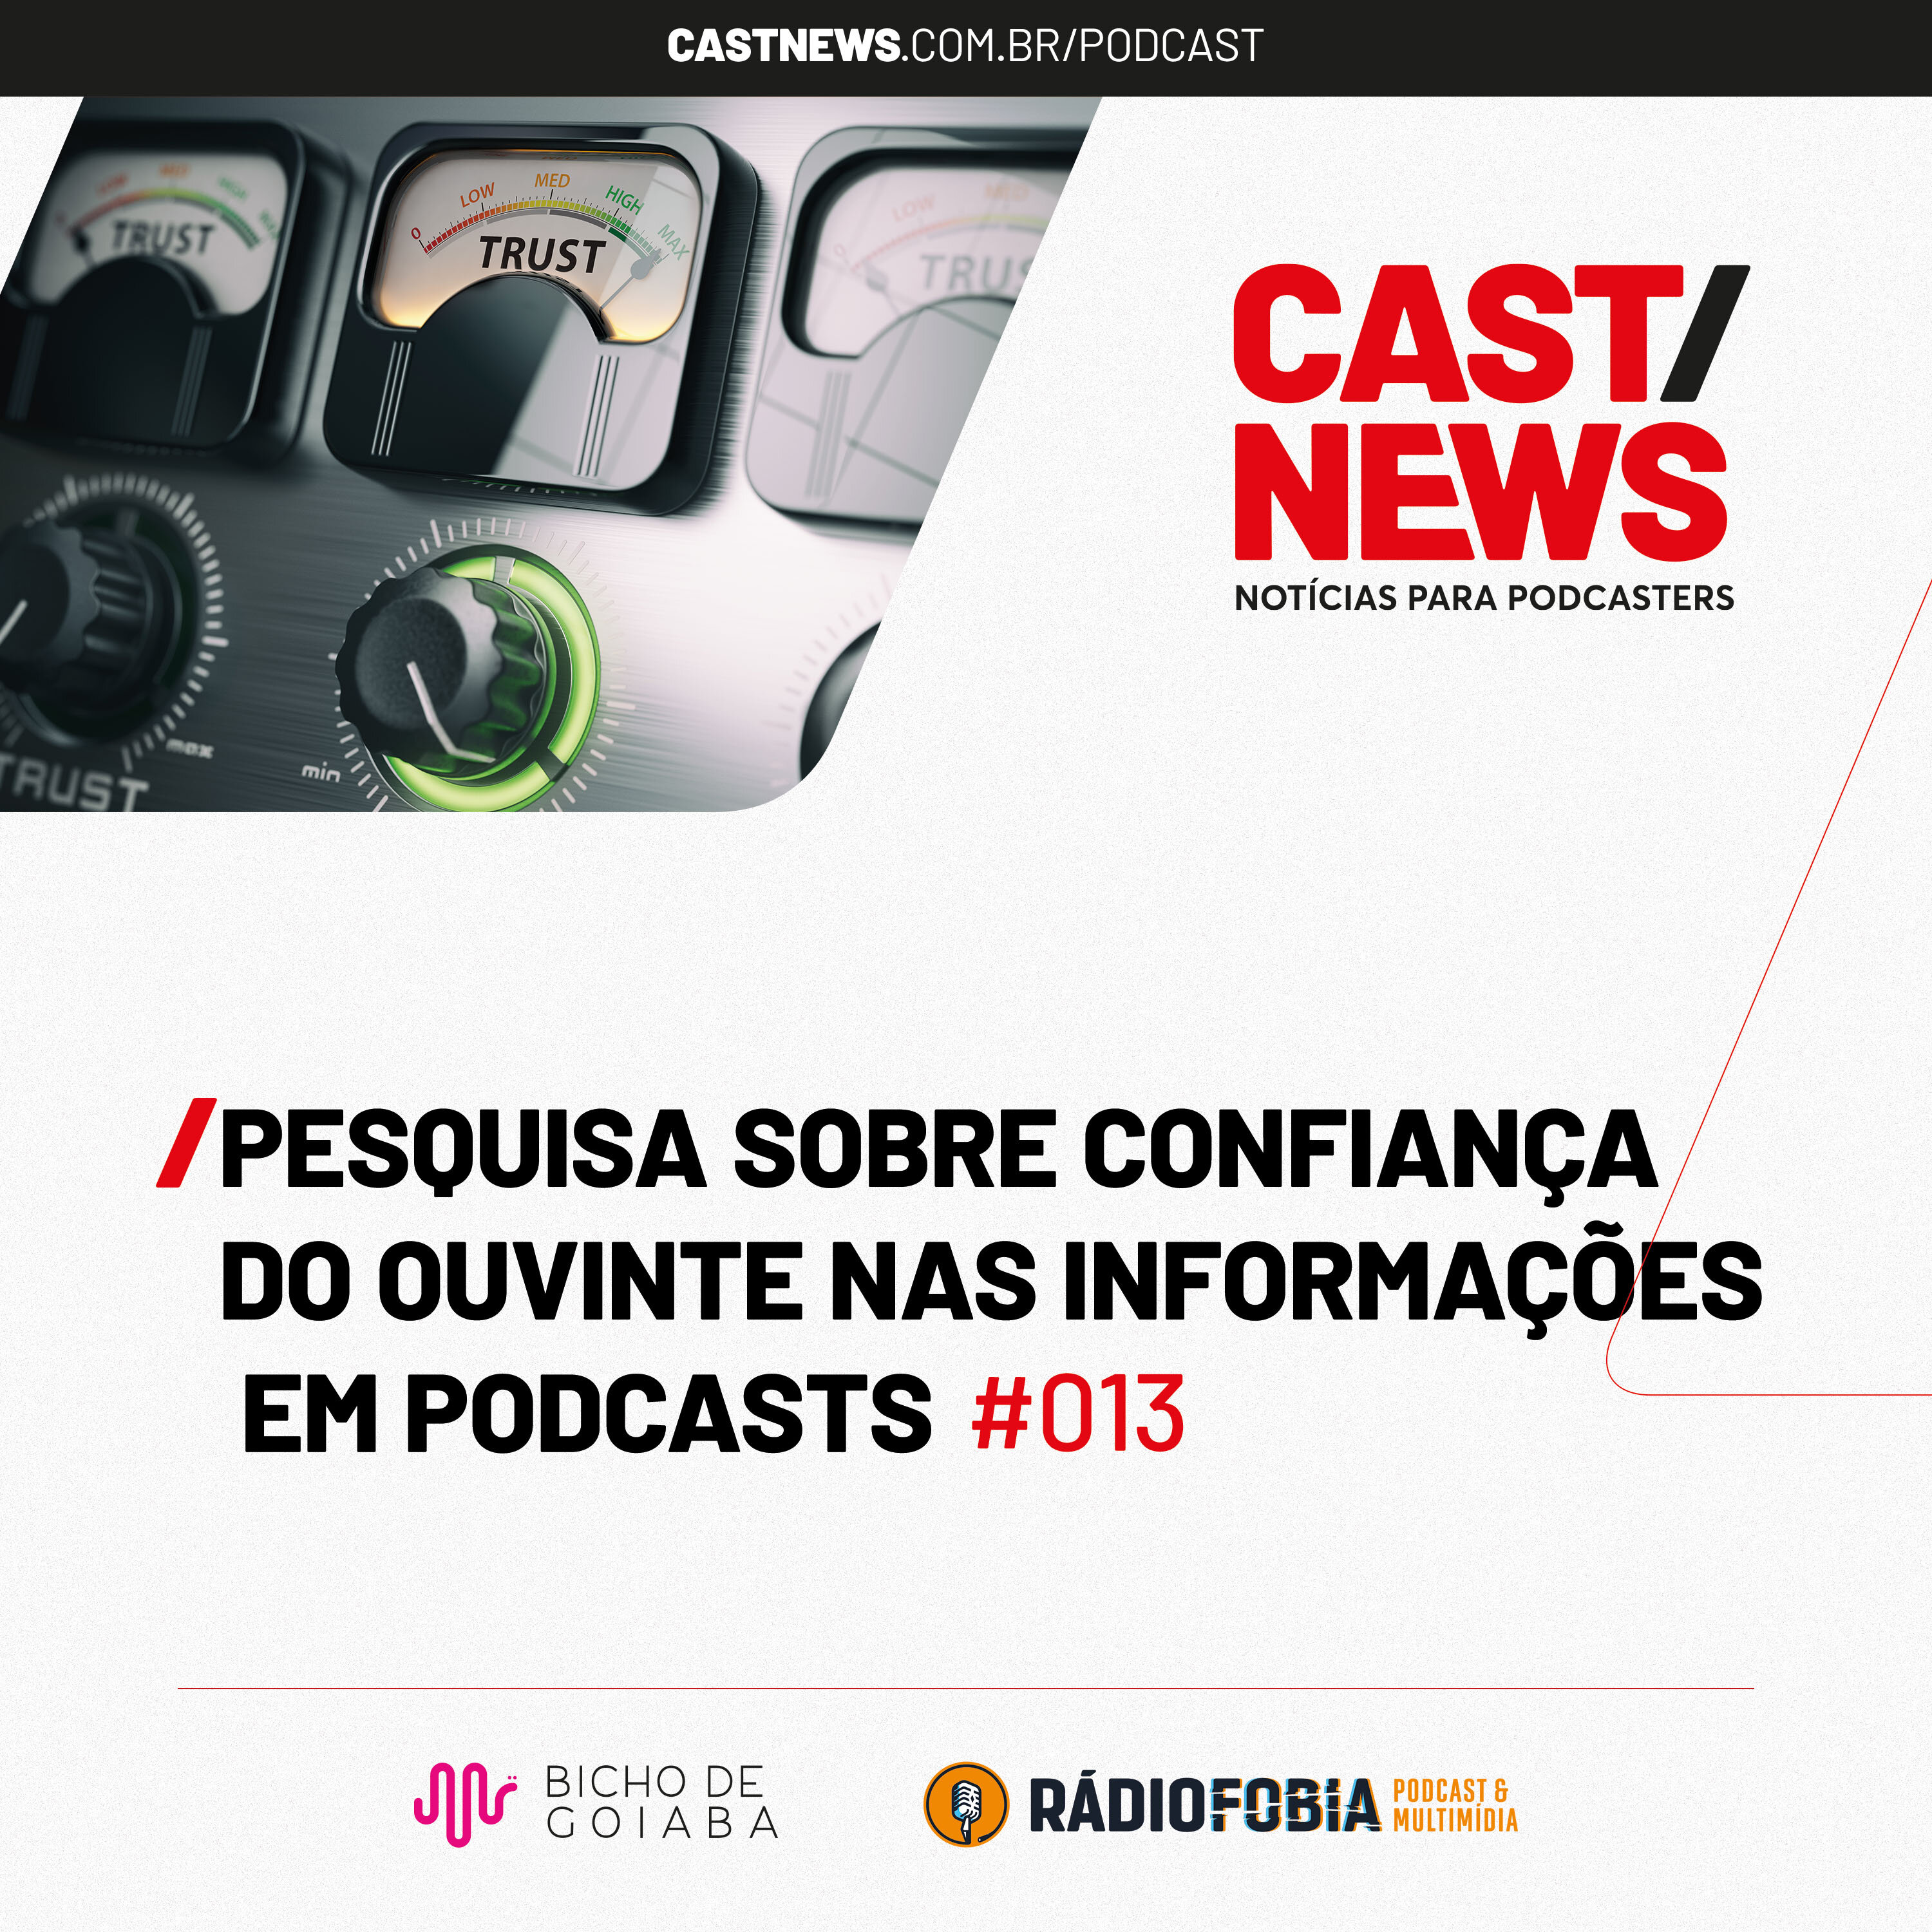 CASTNEWS #013 - Pesquisa sobre confiança do ouvinte nas informações em podcasts